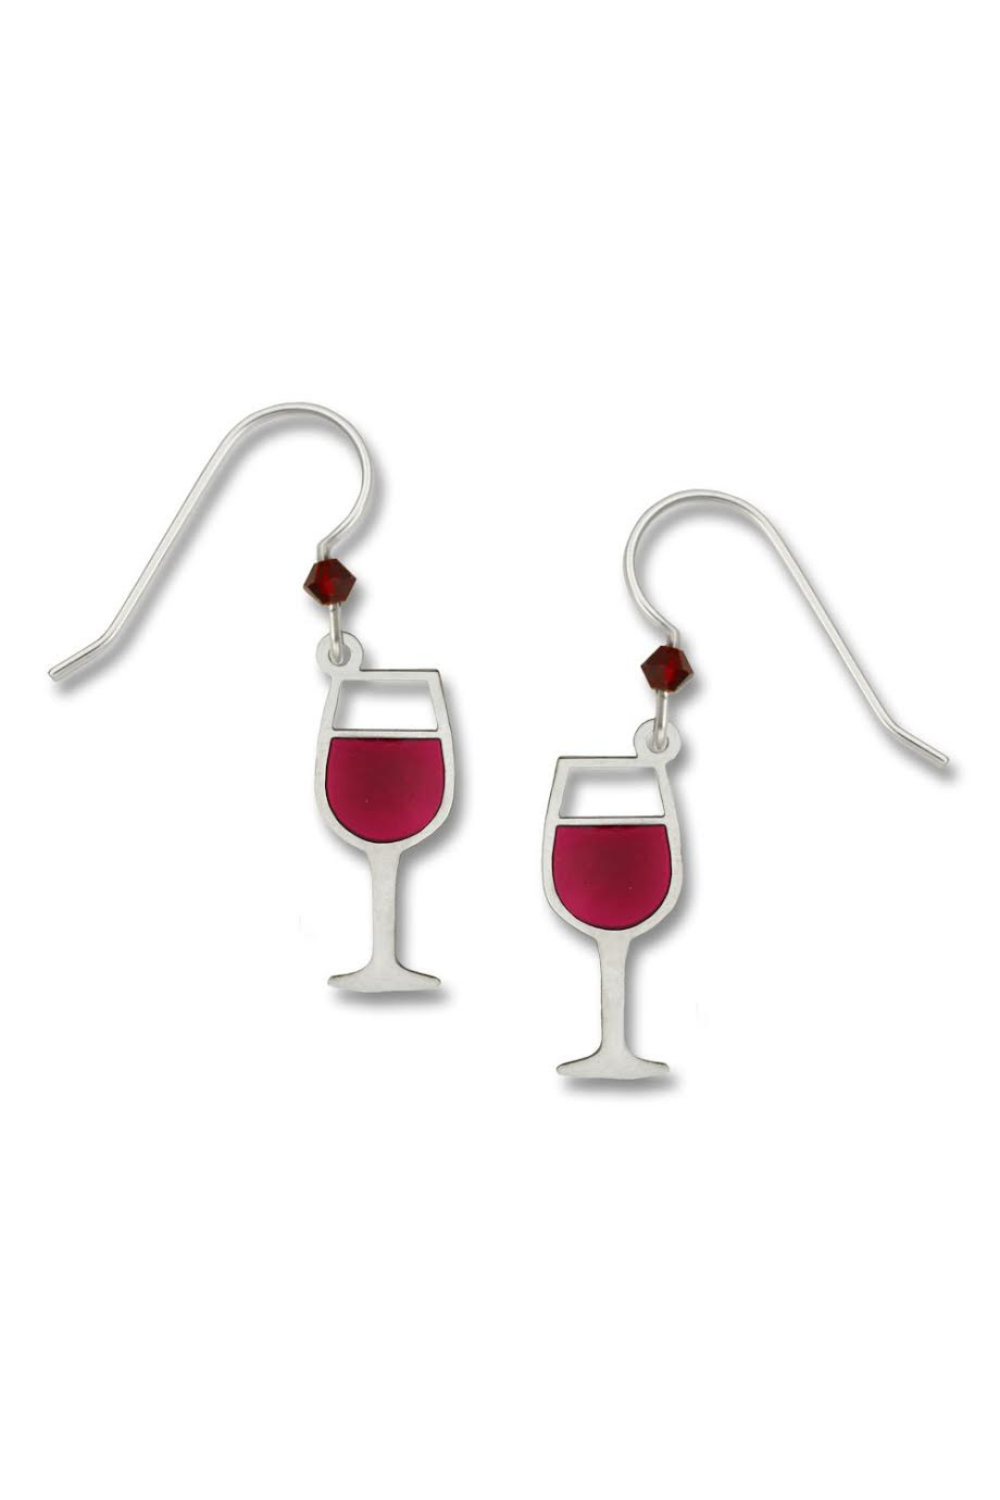 Sienna Sky Red Wine Earrings